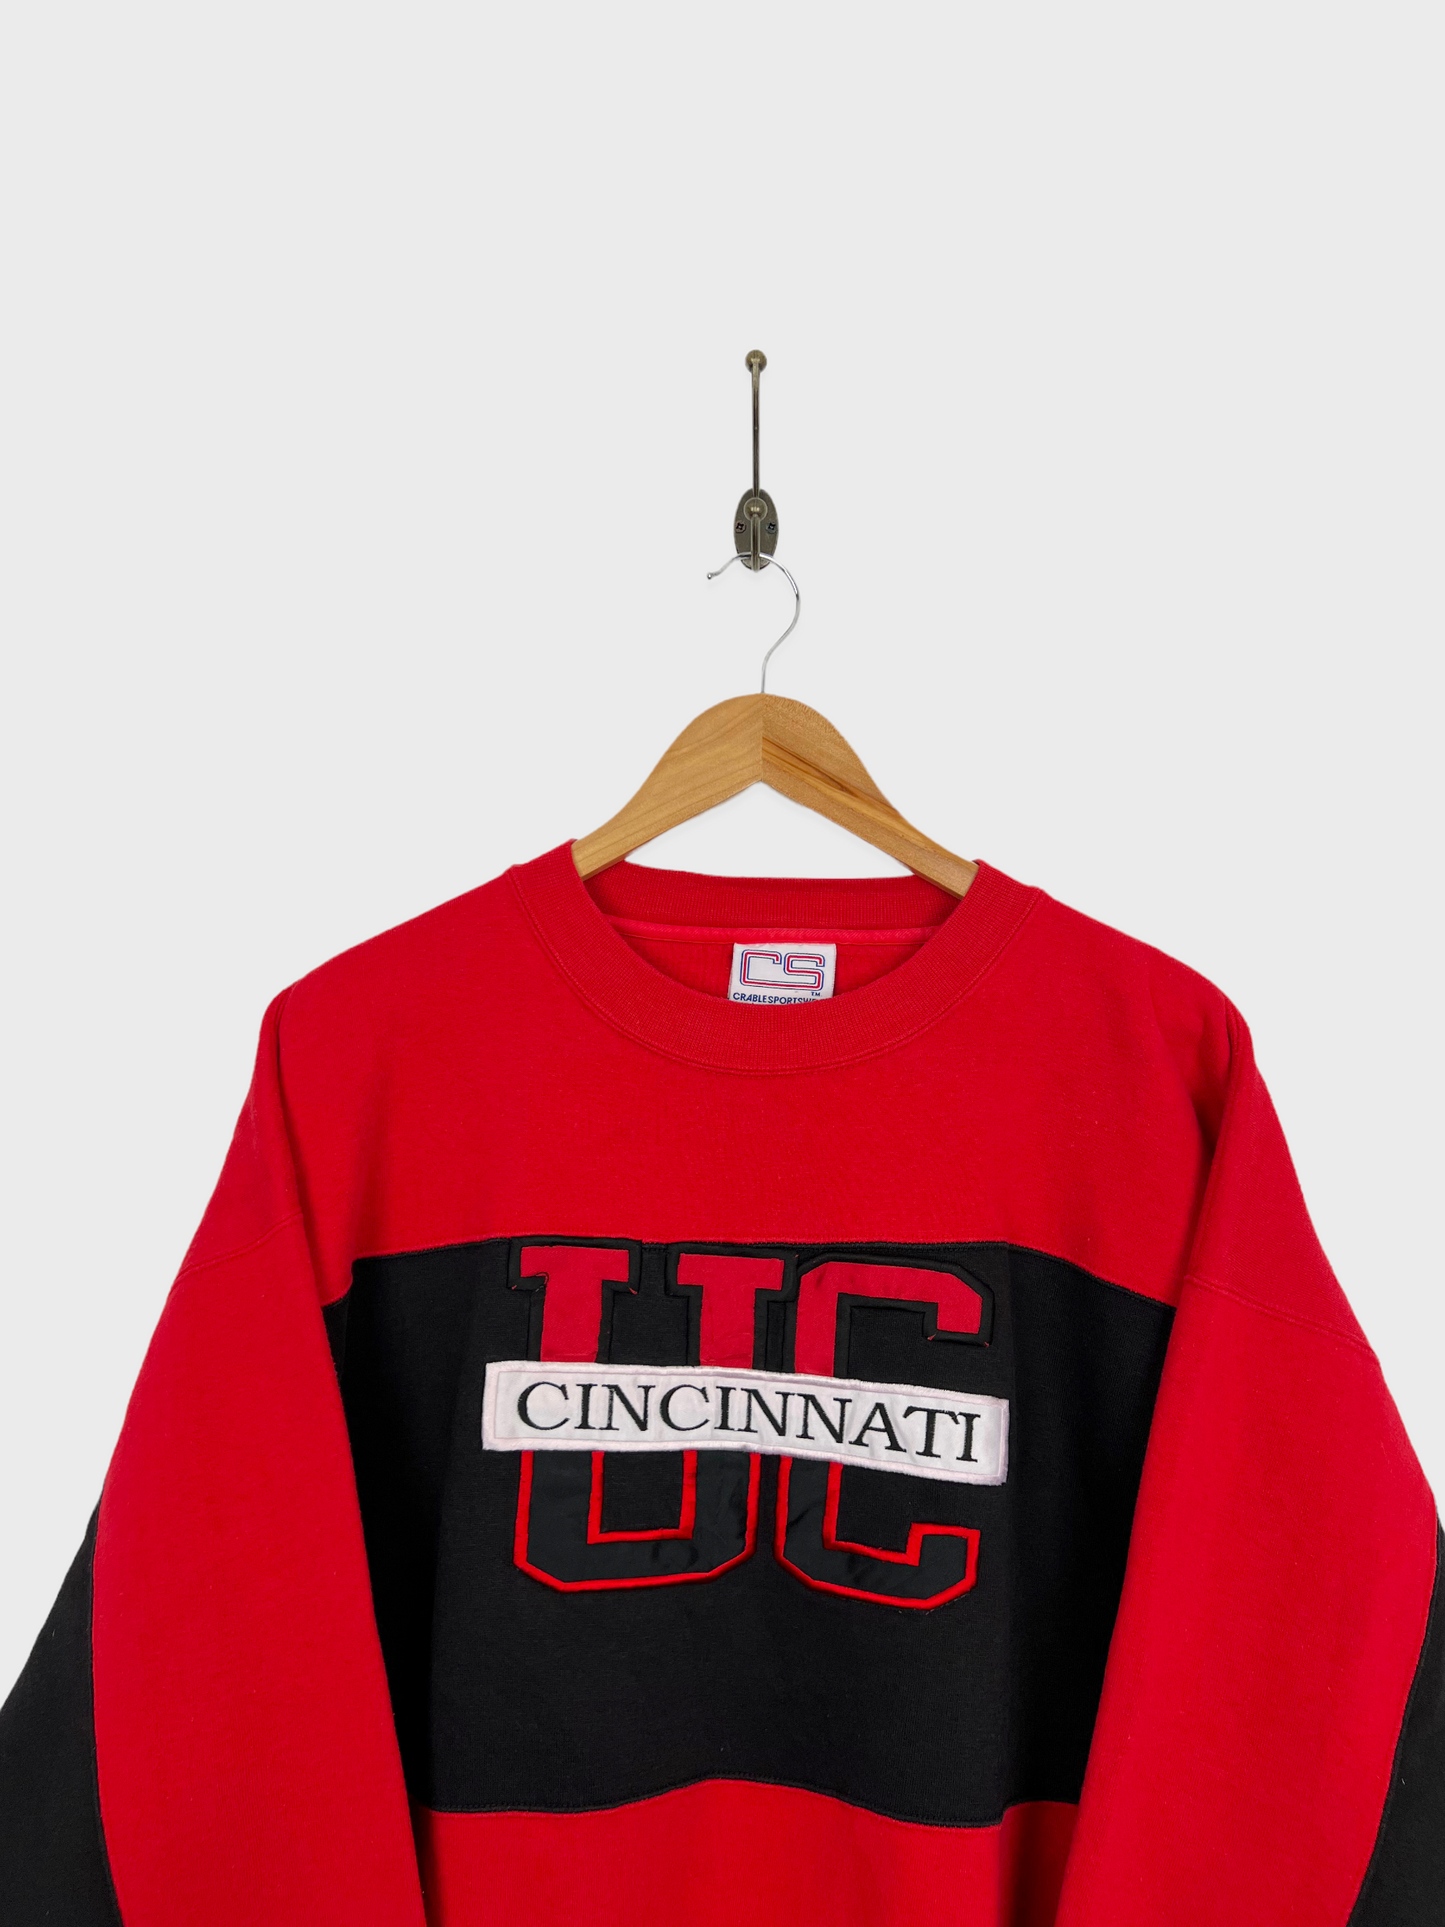 90's Cincinnati Uni Embroidered Vintage Sweatshirt Size L-XL